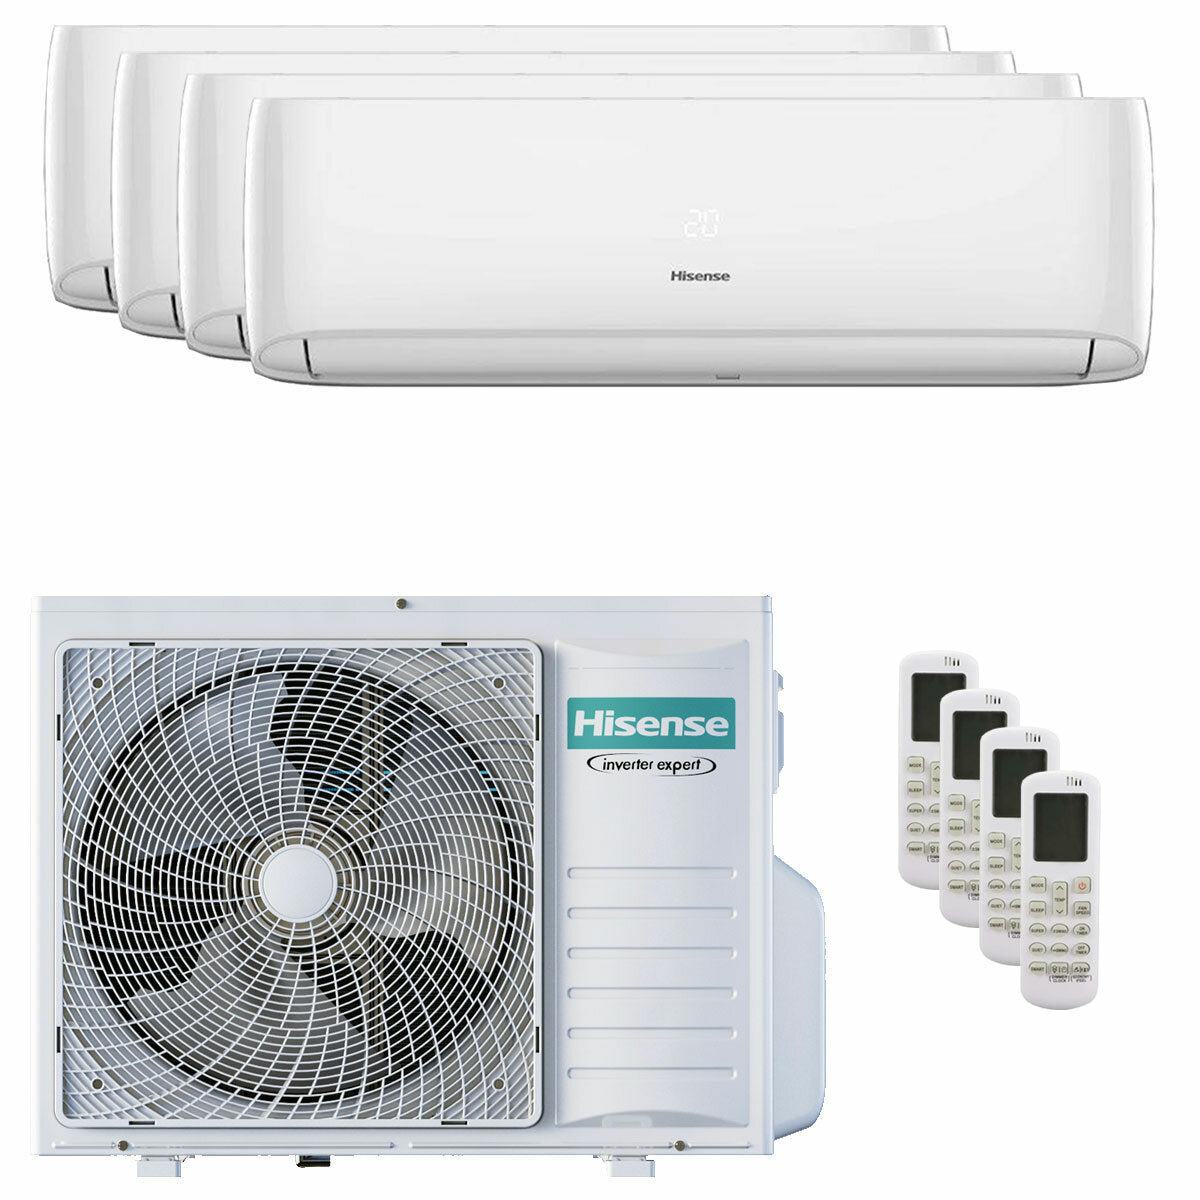 Hisense Hi-Comfort quadri climatiseur split 7000+7000+12000+12000 BTU onduleur A++ wifi unité extérieure 8 kW